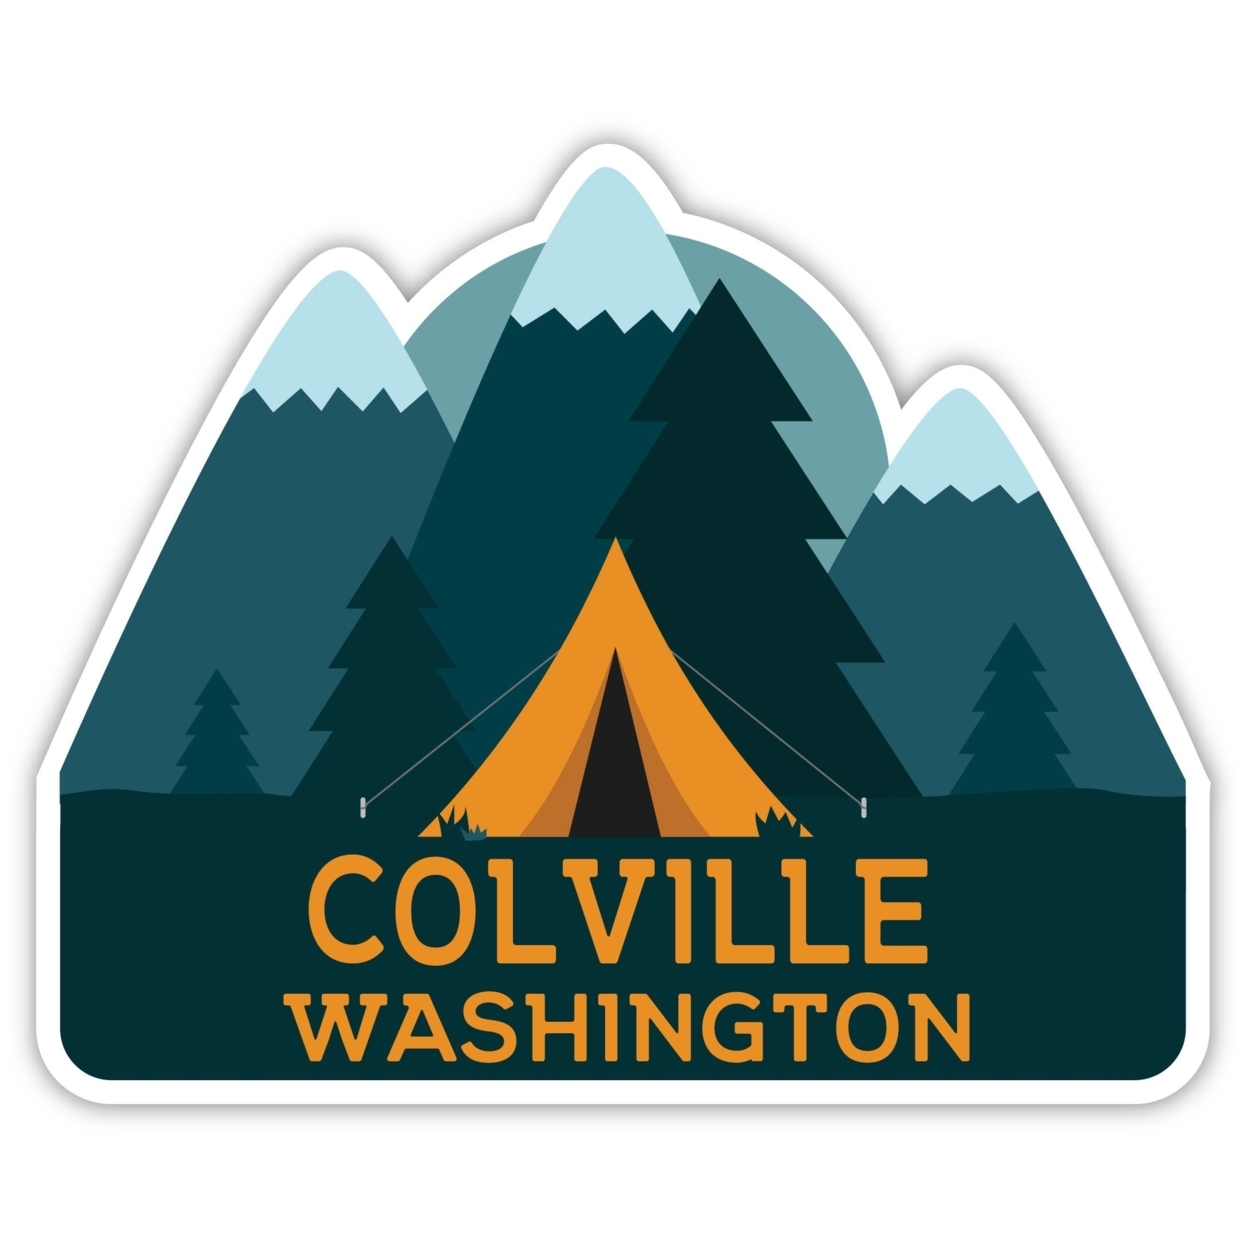 Colville Washington Souvenir Decorative Stickers (Choose Theme And Size) - Single Unit, 6-Inch, Tent